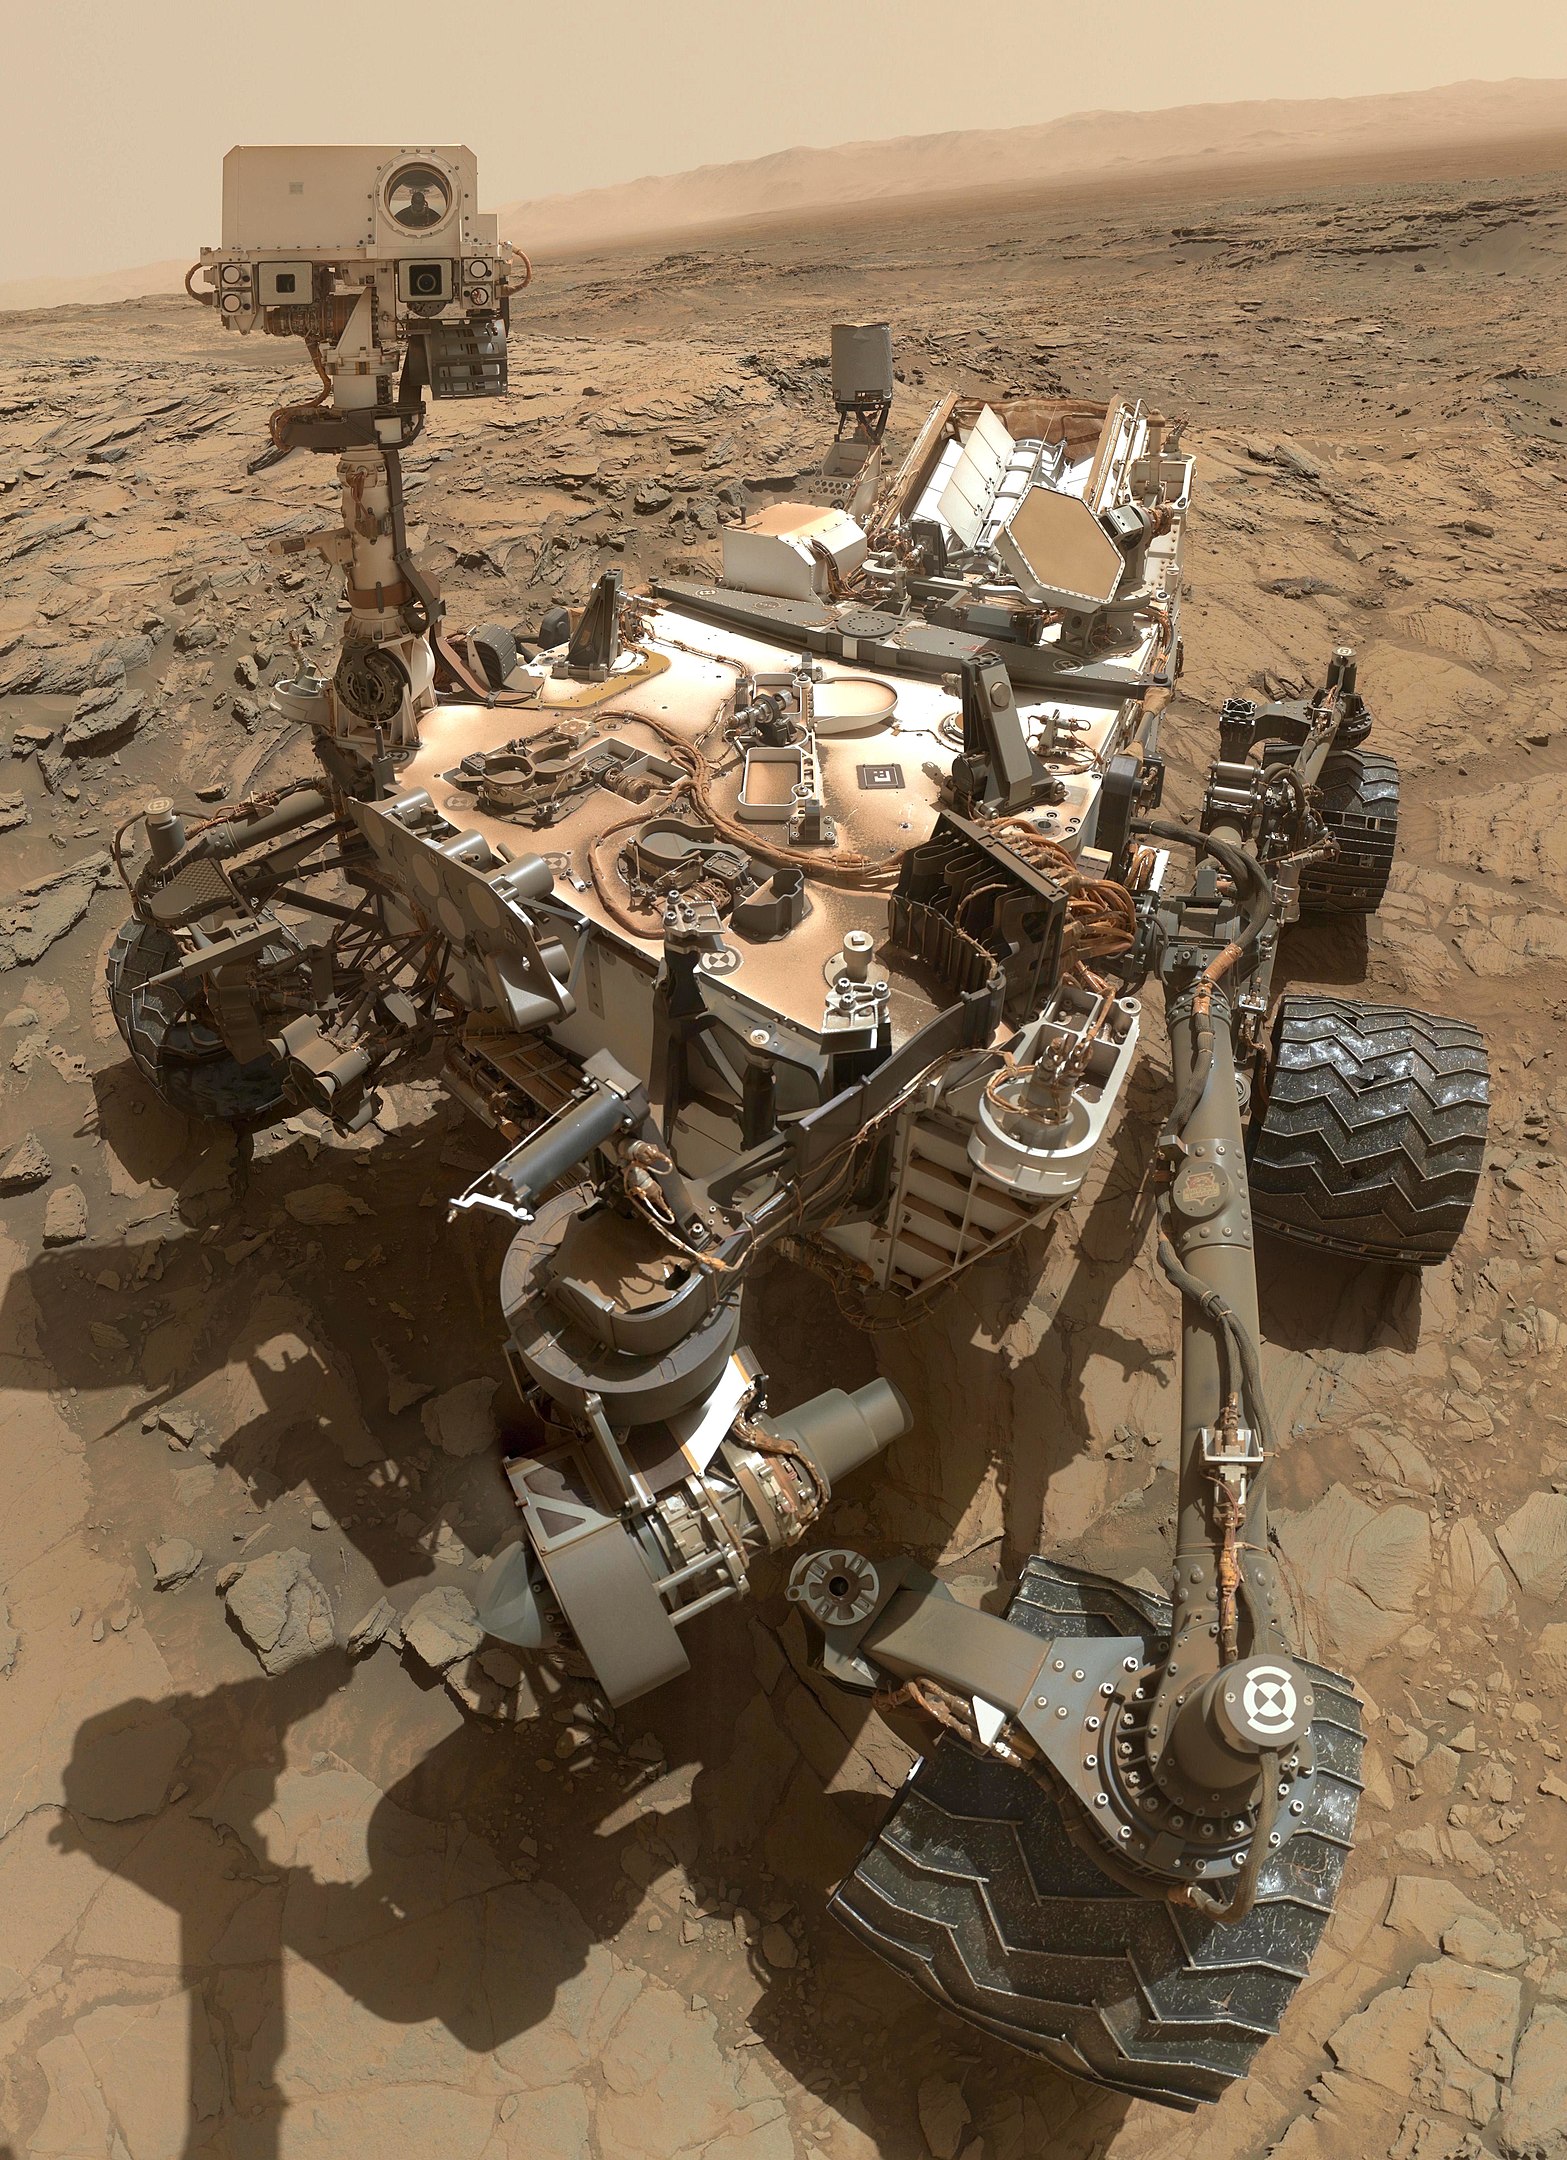 Lithium Facts, Curiosity Rover